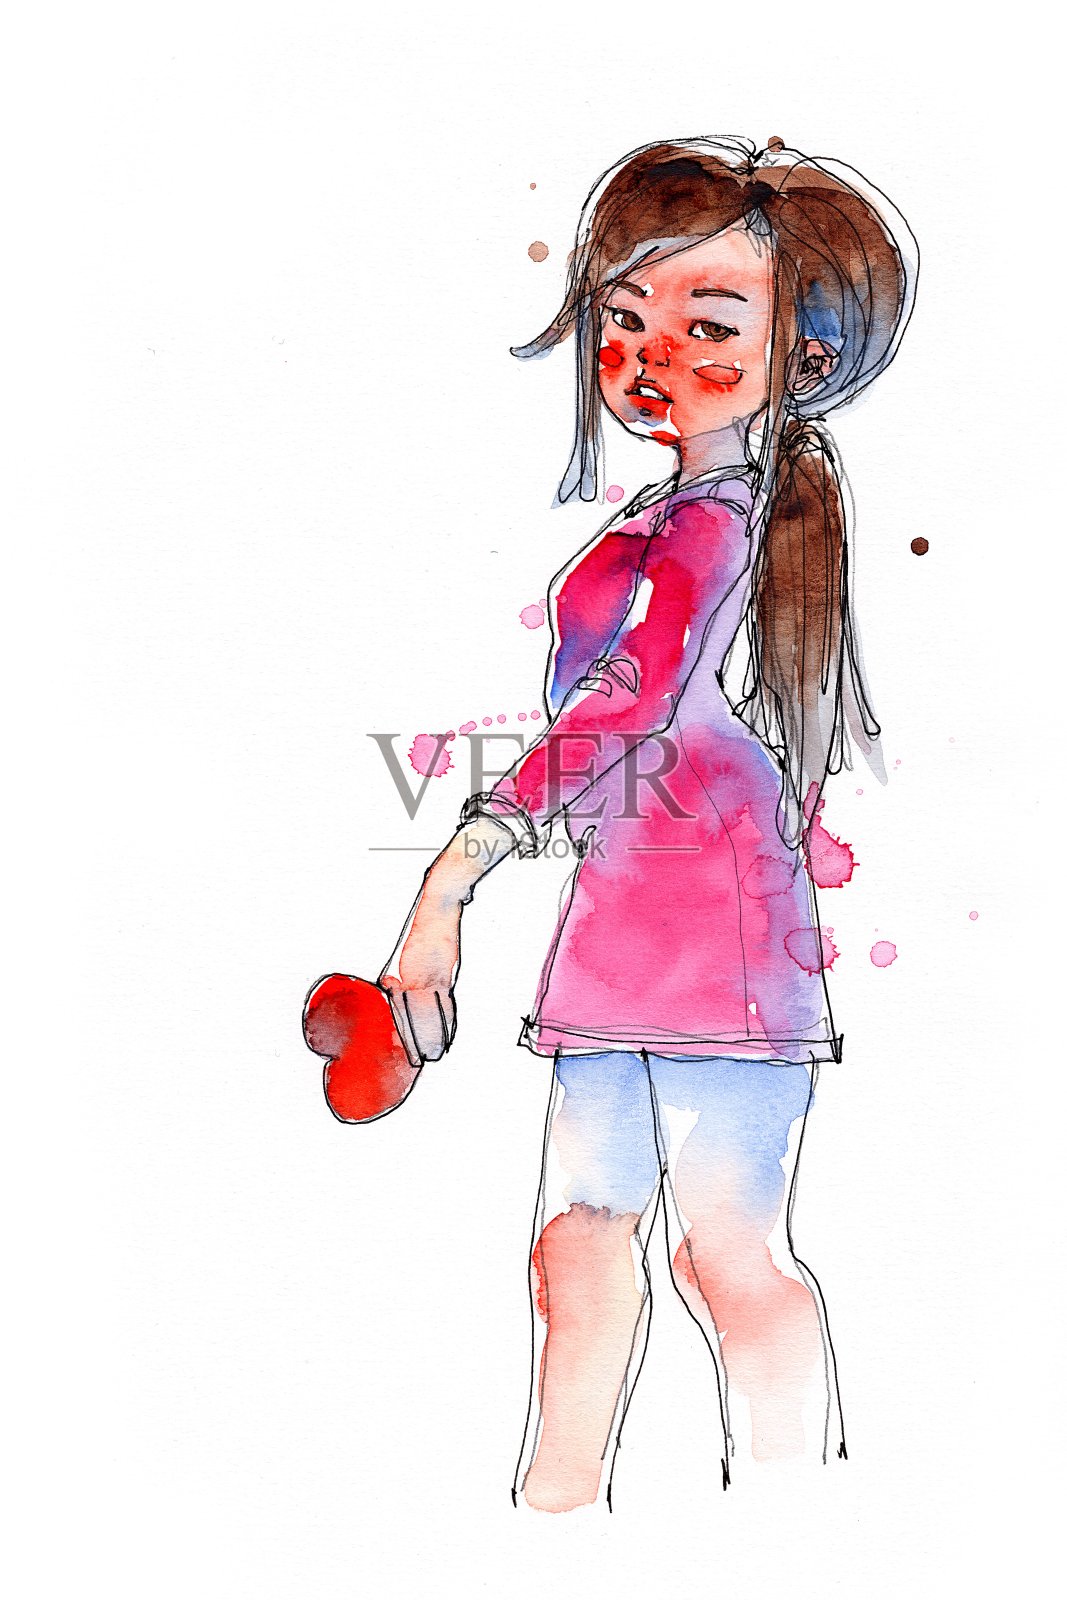 水墨水彩画女孩与红心符号，传统艺术品扫描插画图片素材